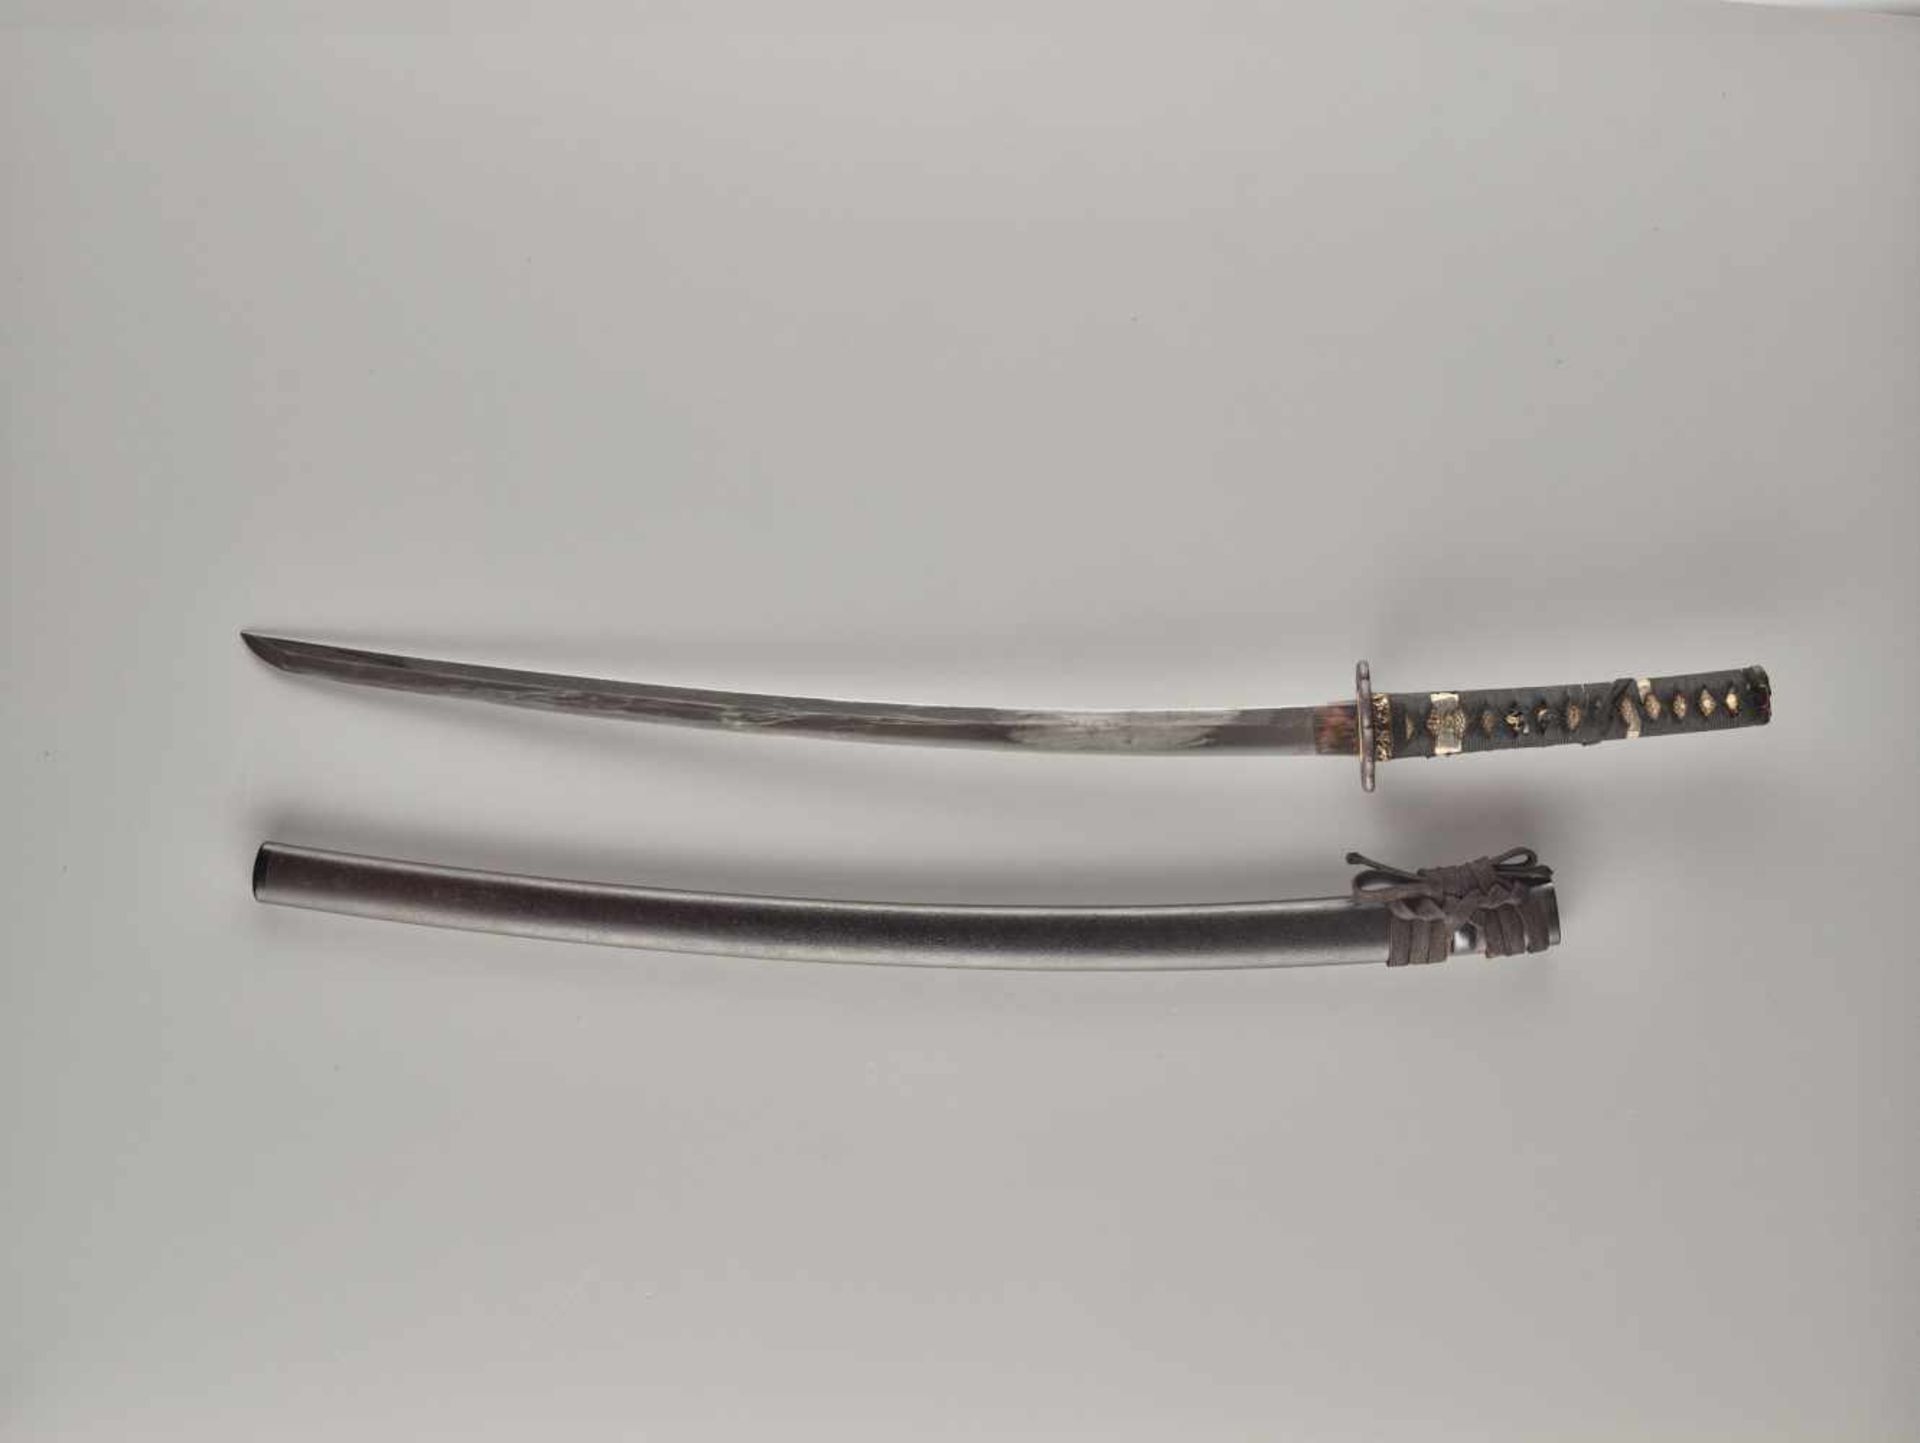 A KATANA Japan, mid-Edo period (1603 - 1868) (blade); c. 18th century (koshirae)BladeShinogi tsukuri